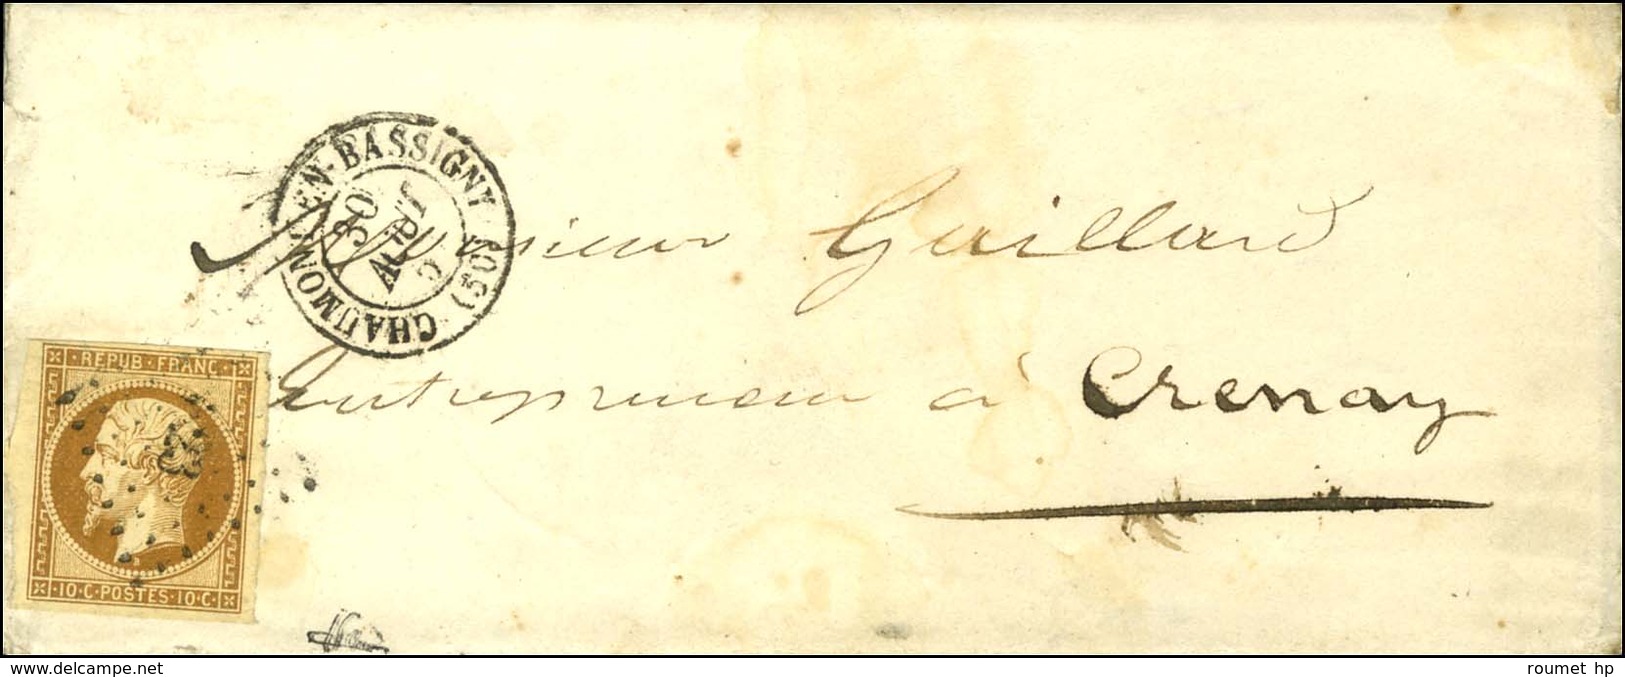 PC 823 / N° 9 Càd T 15 CHAUMONT-EN-BASSIGNY (50) Sur Lettre Avec Texte Adressée Localement à Crenay. 1854. - TB. - R. - 1852 Louis-Napoleon